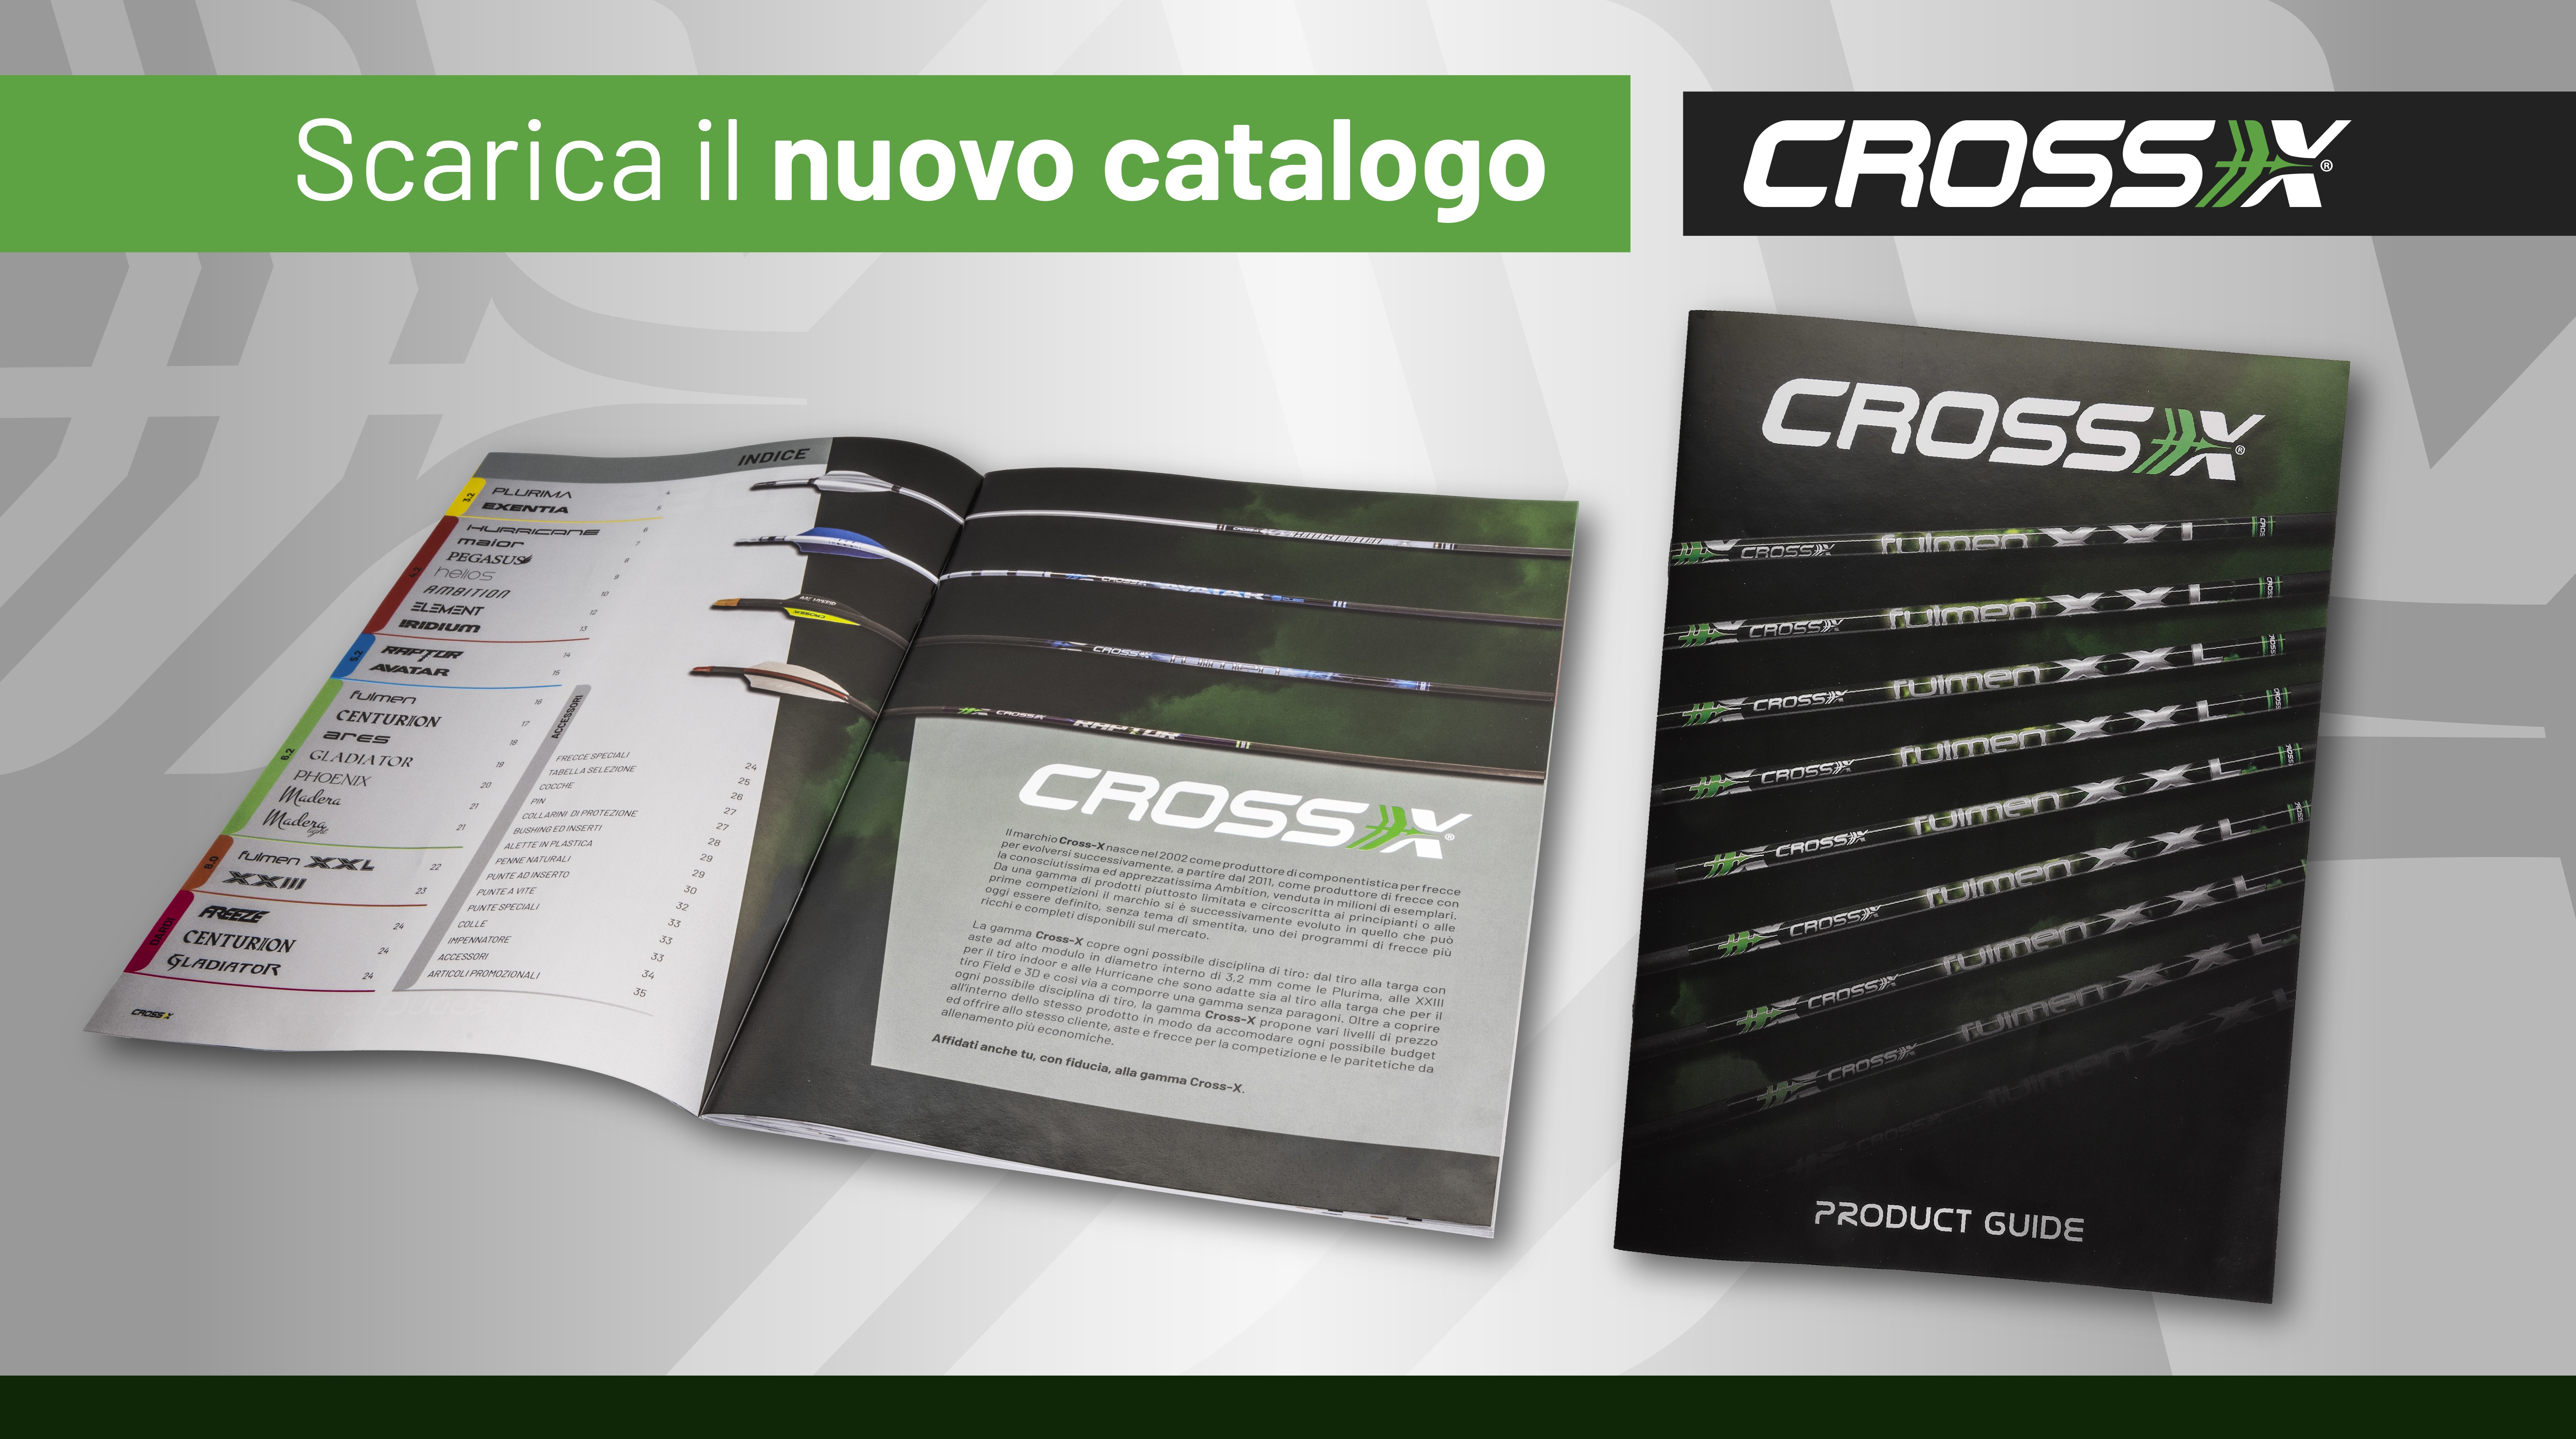 Cross x catalogo